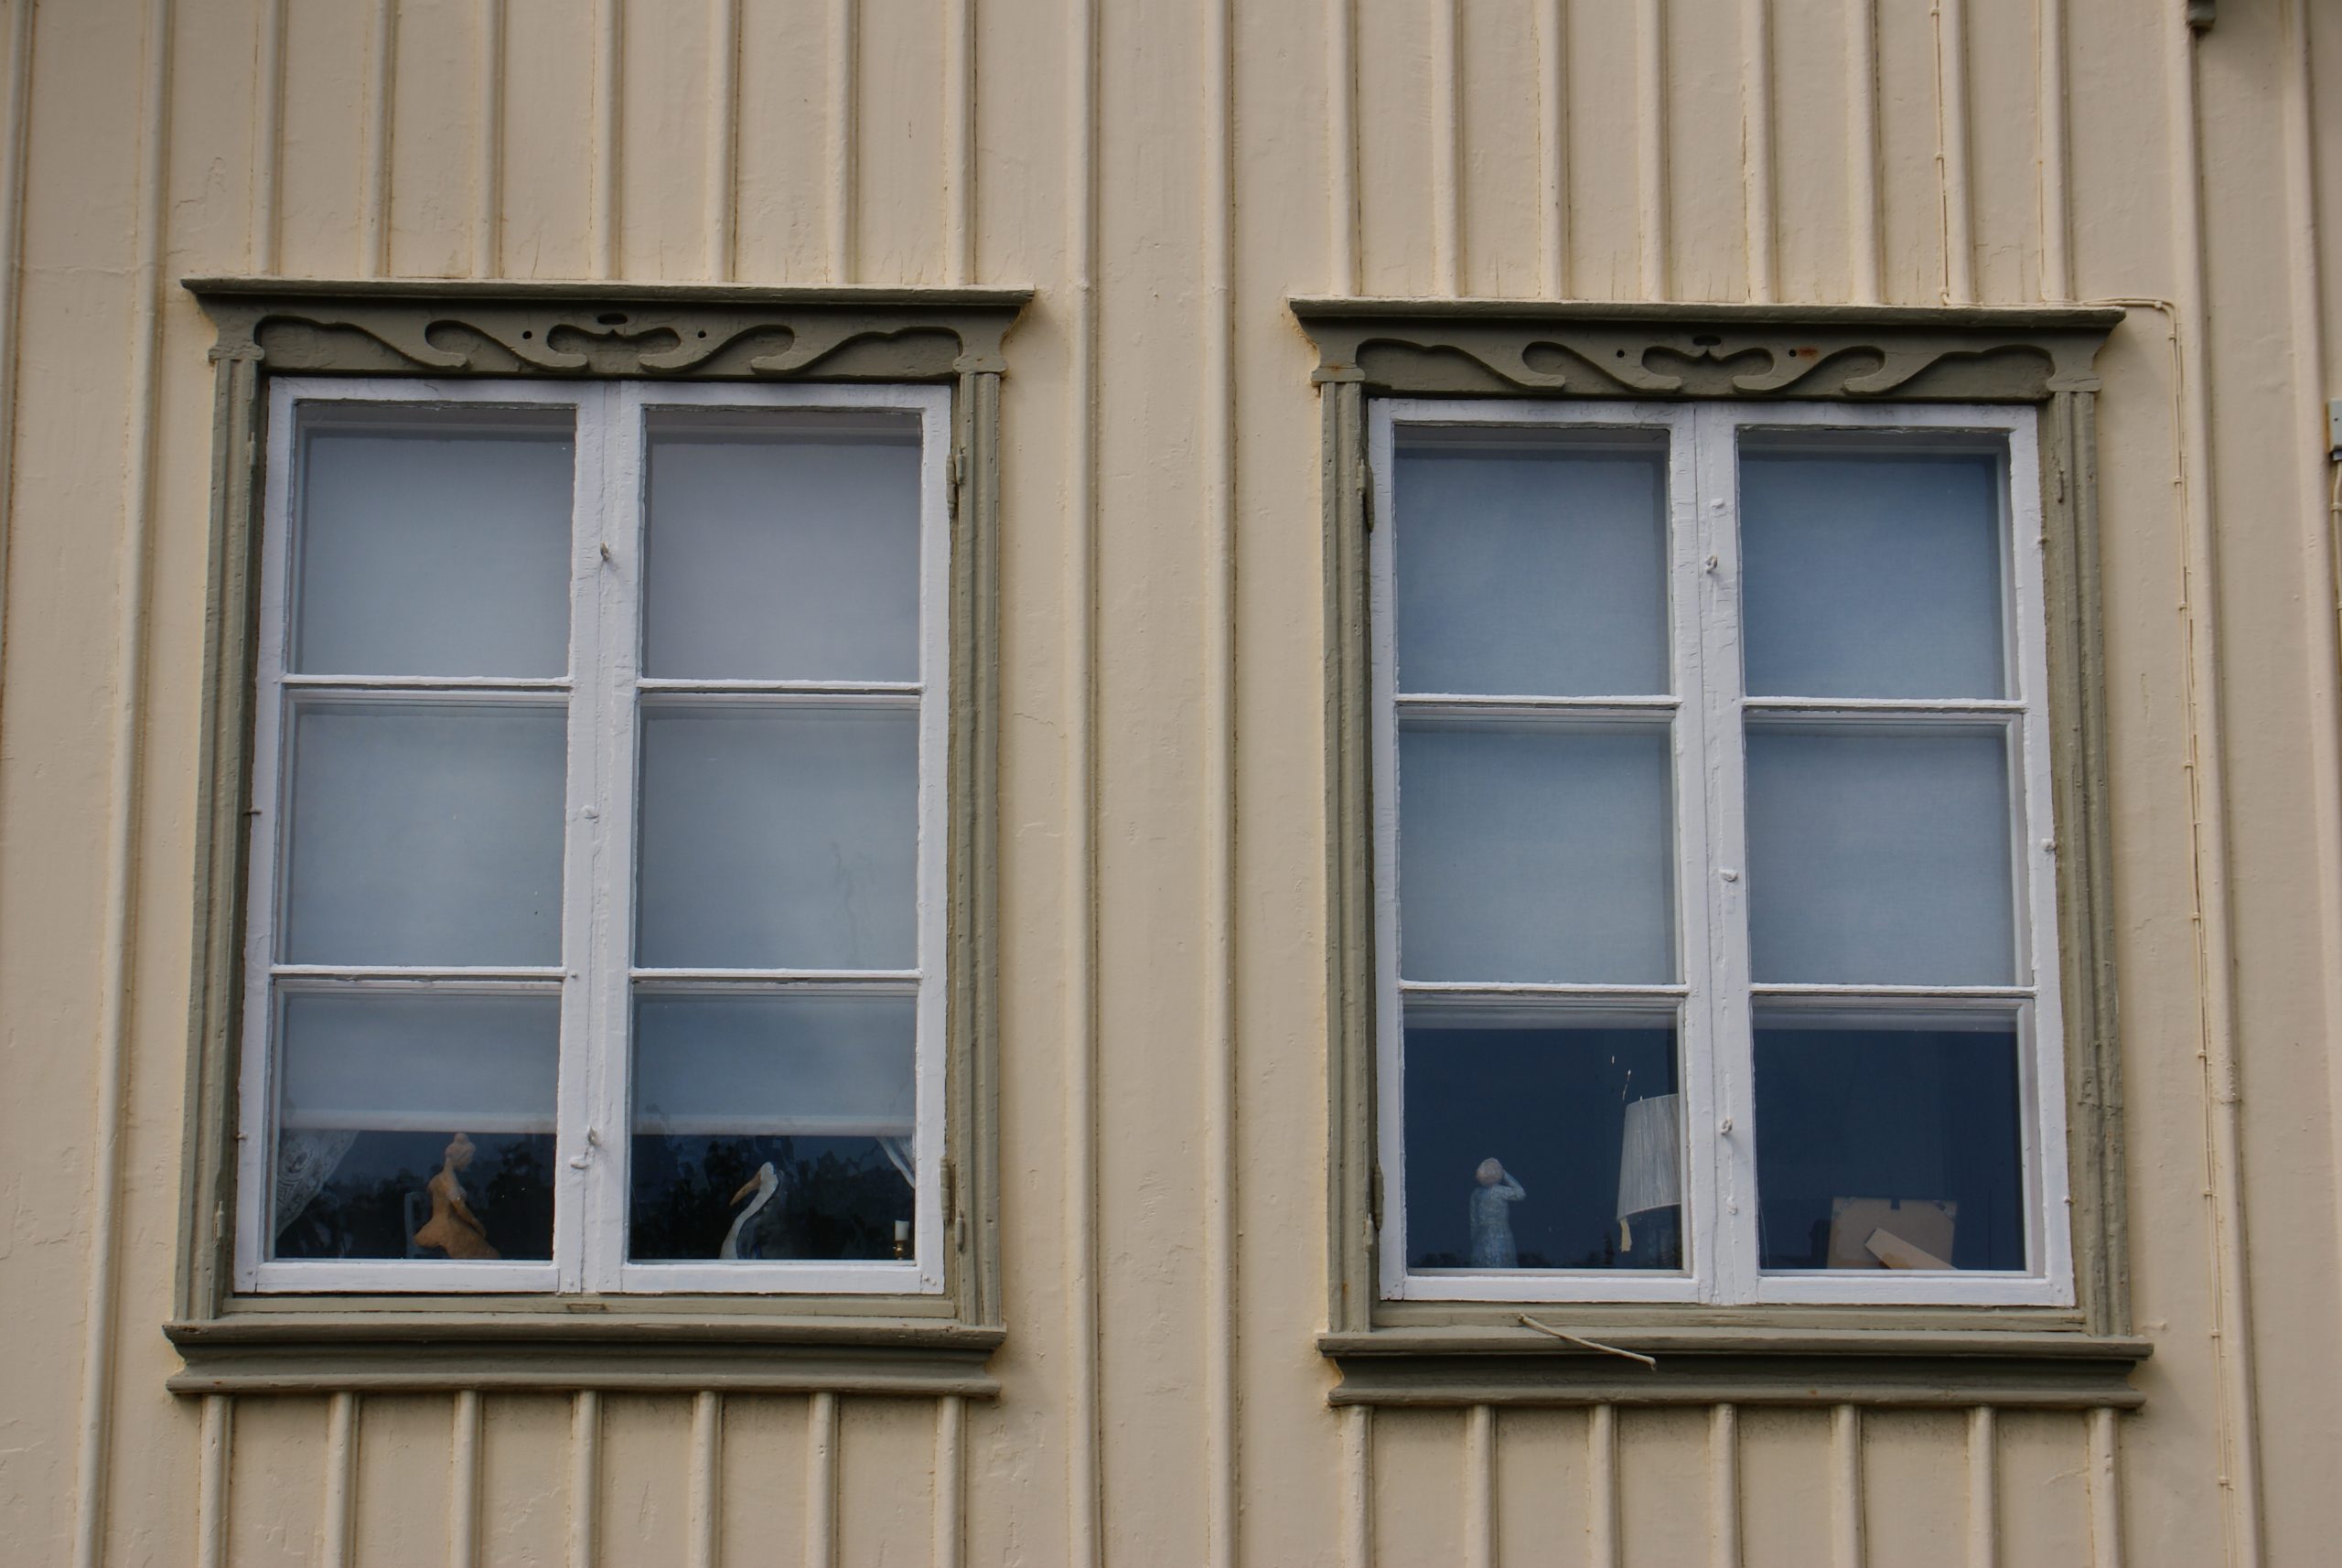 Detaljfoto. En fasad med närbild på två vita sexdelade fönster med grågröna profilerade fönsterfoder.